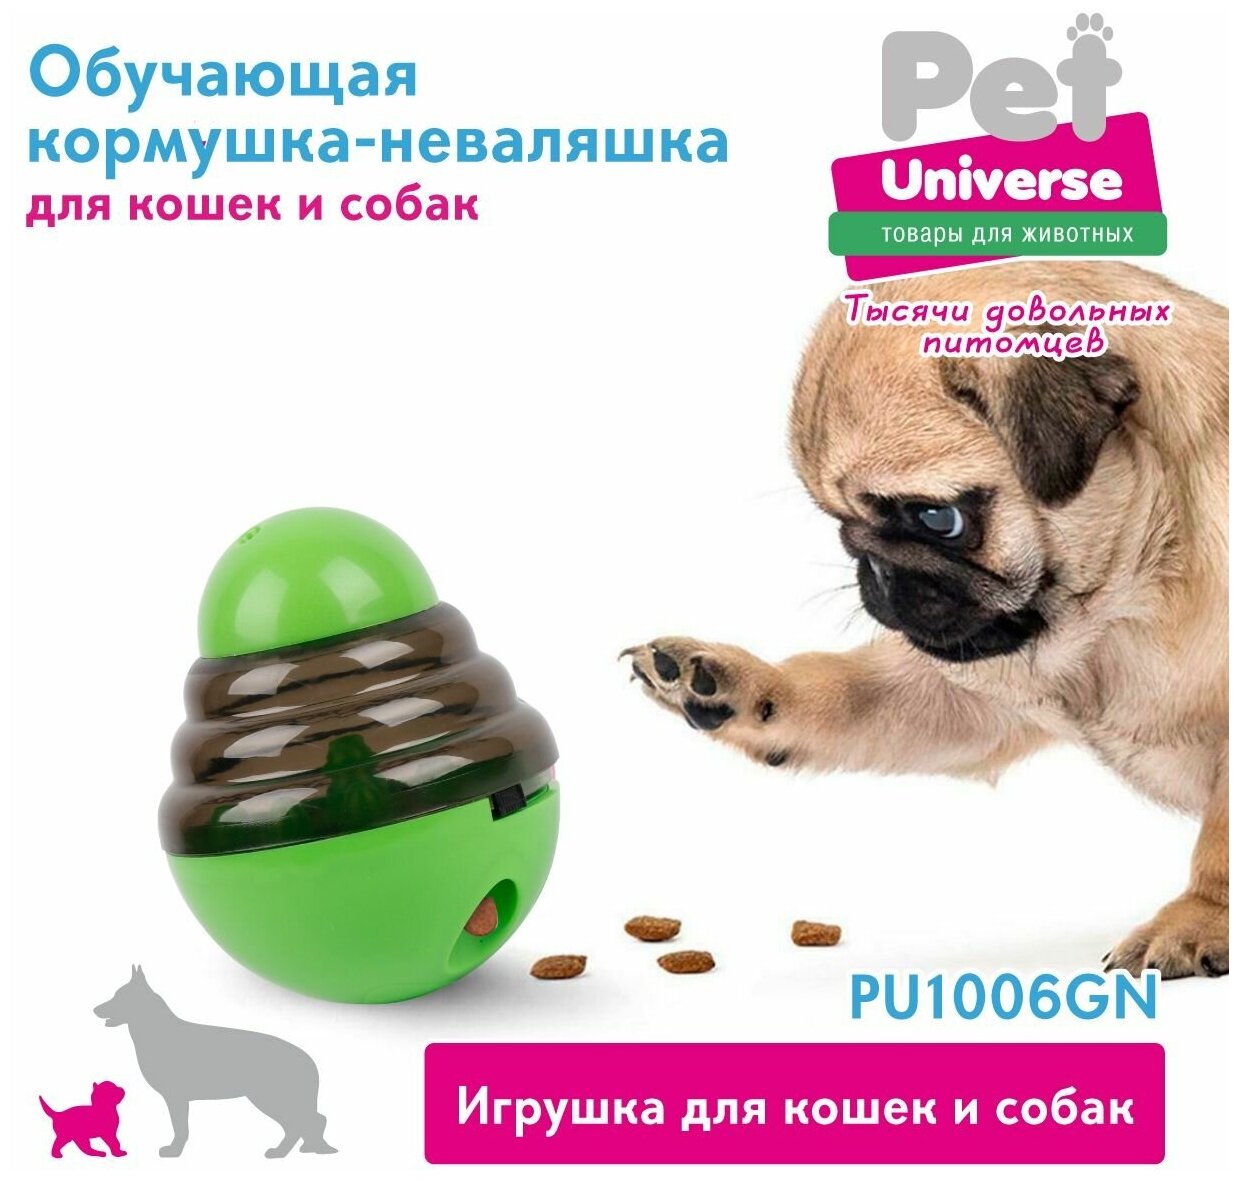 Развивающая игрушка для собак и кошек Pet Universe, головоломка, обучающая неваляшка кормушка дозатор, для медленной еды и лакомств, IQ PU1006GN - фотография № 9